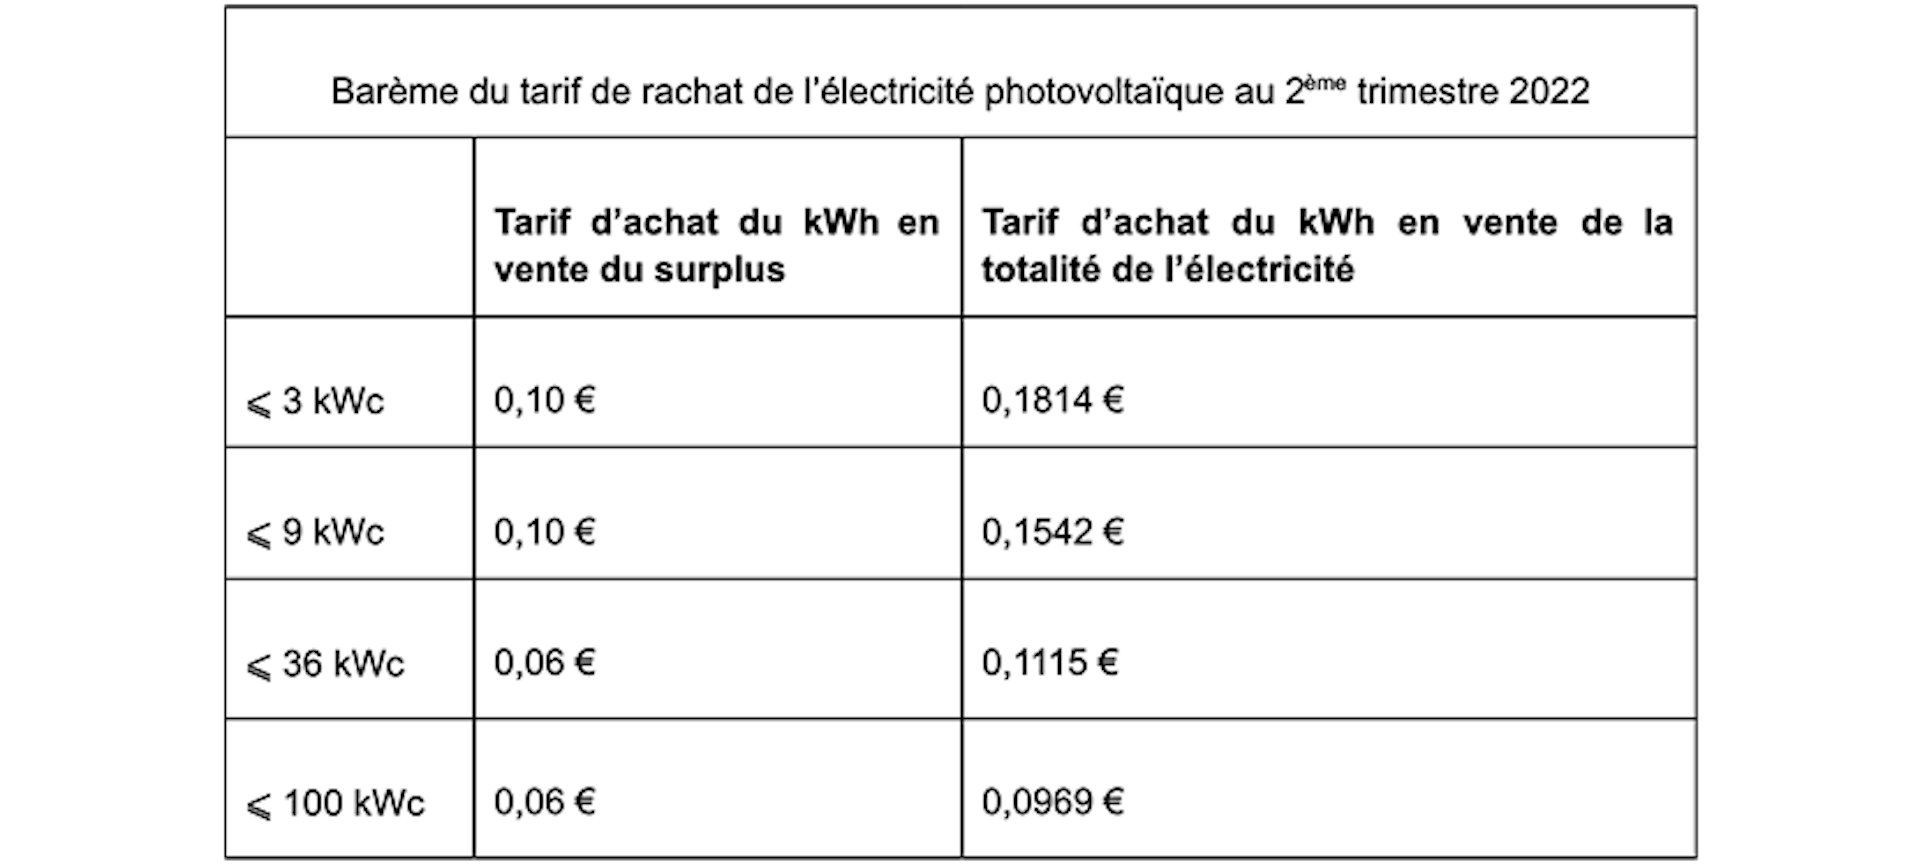 Barème du tarif de rachat de l’électricité photovoltaïque au 2ème trimestre 2022